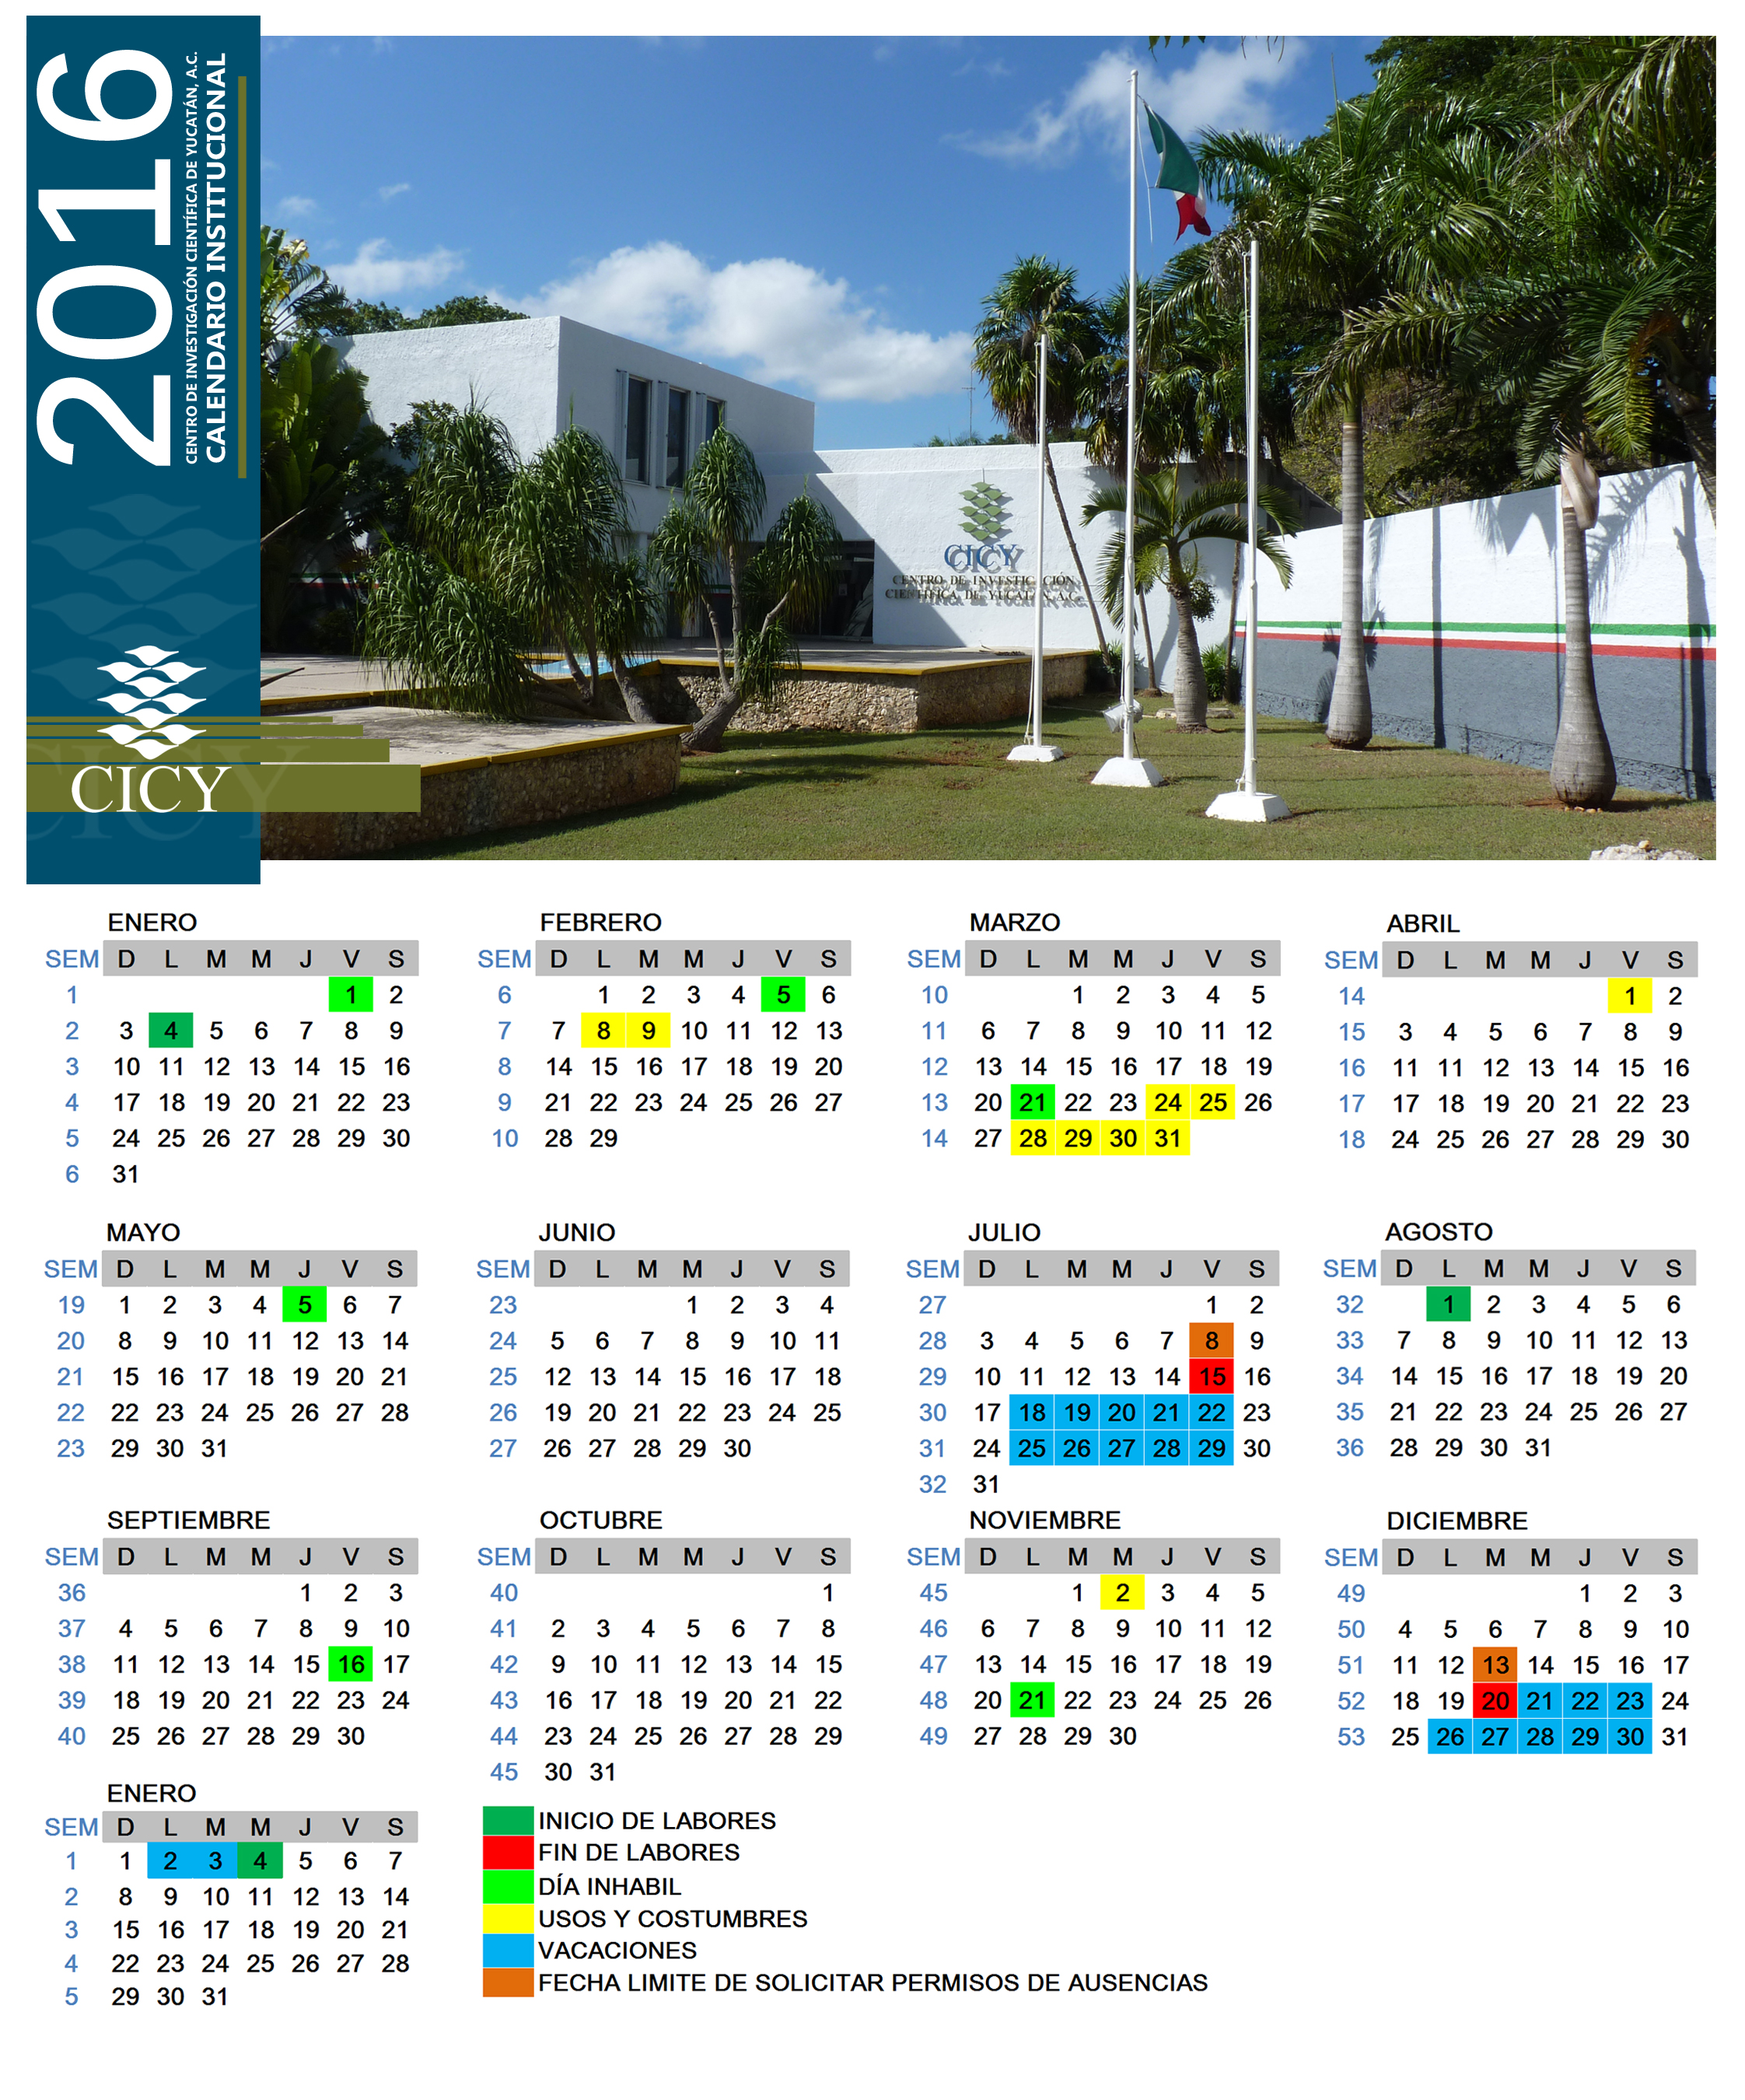 Calendario2016 -Internet